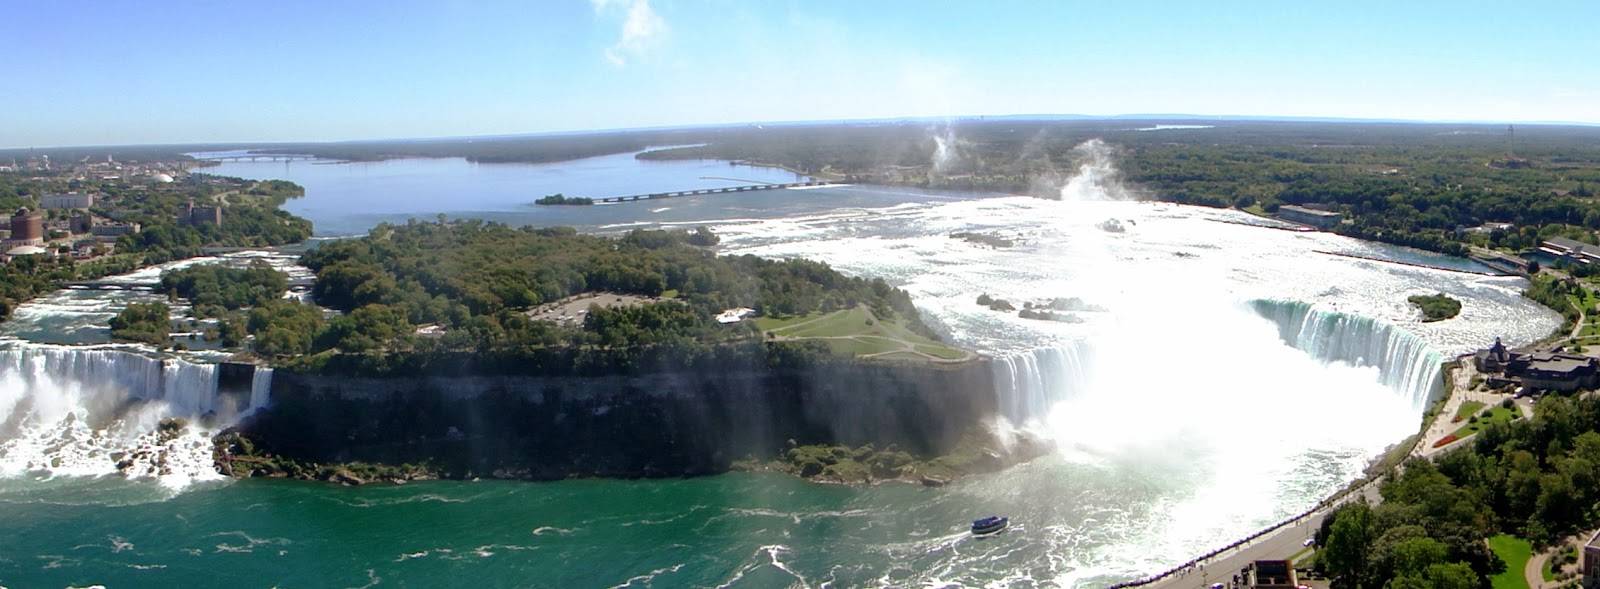 Река ниагара соединяющая озера эри и. Ниагарский водопад высох. Ниагарский водопад и 5 озер. Джесси Шарп Ниагарский водопад. Аяно Токумасу Ниагарский водопад.